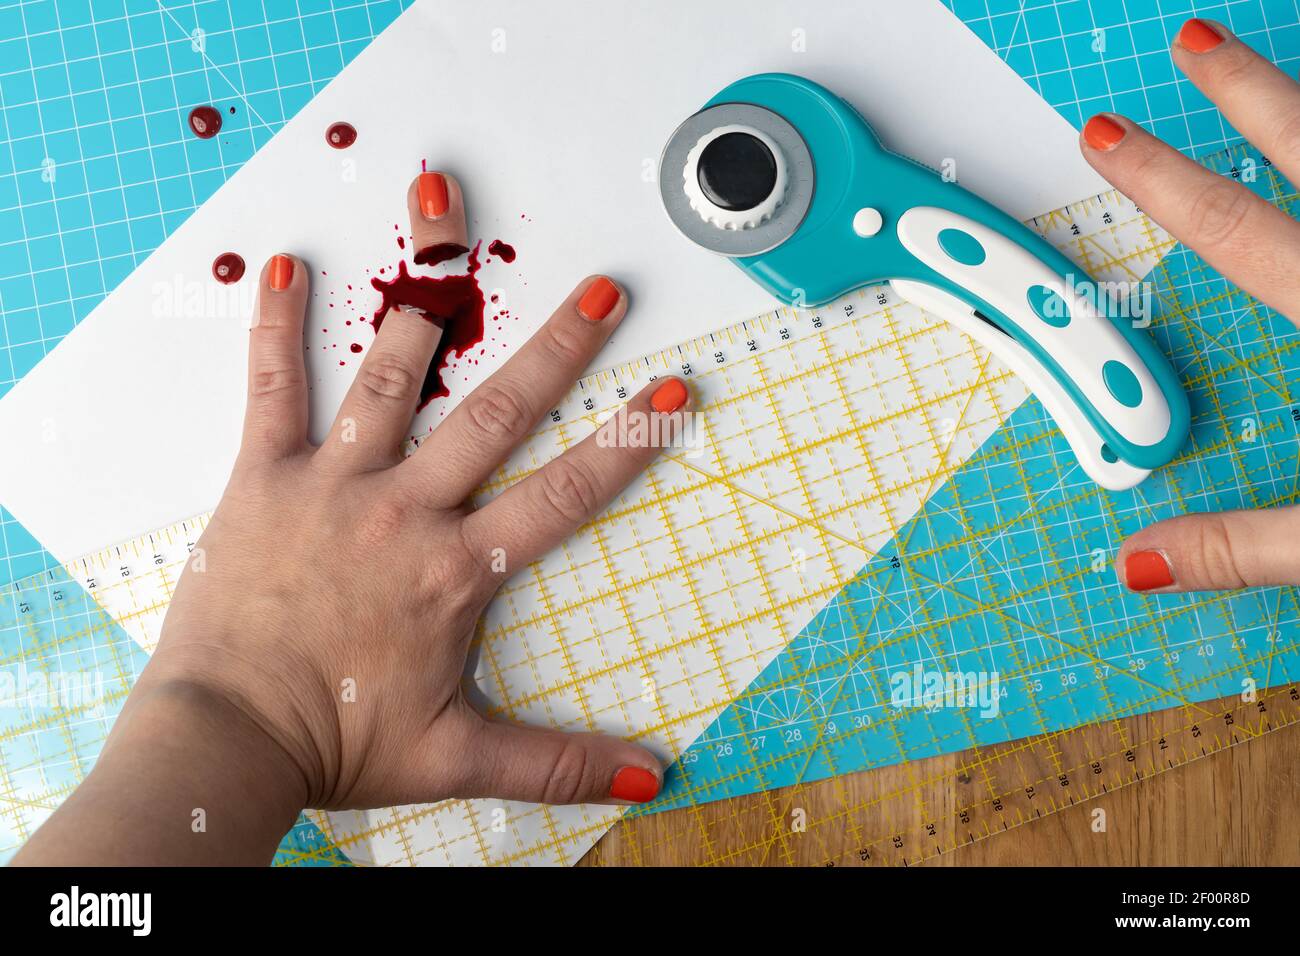 Una mujer con esmalte de uñas de color naranja picó su dedo una cortadora giratoria mientras se utiliza una estera de corte azul brillante y una regla Foto de stock